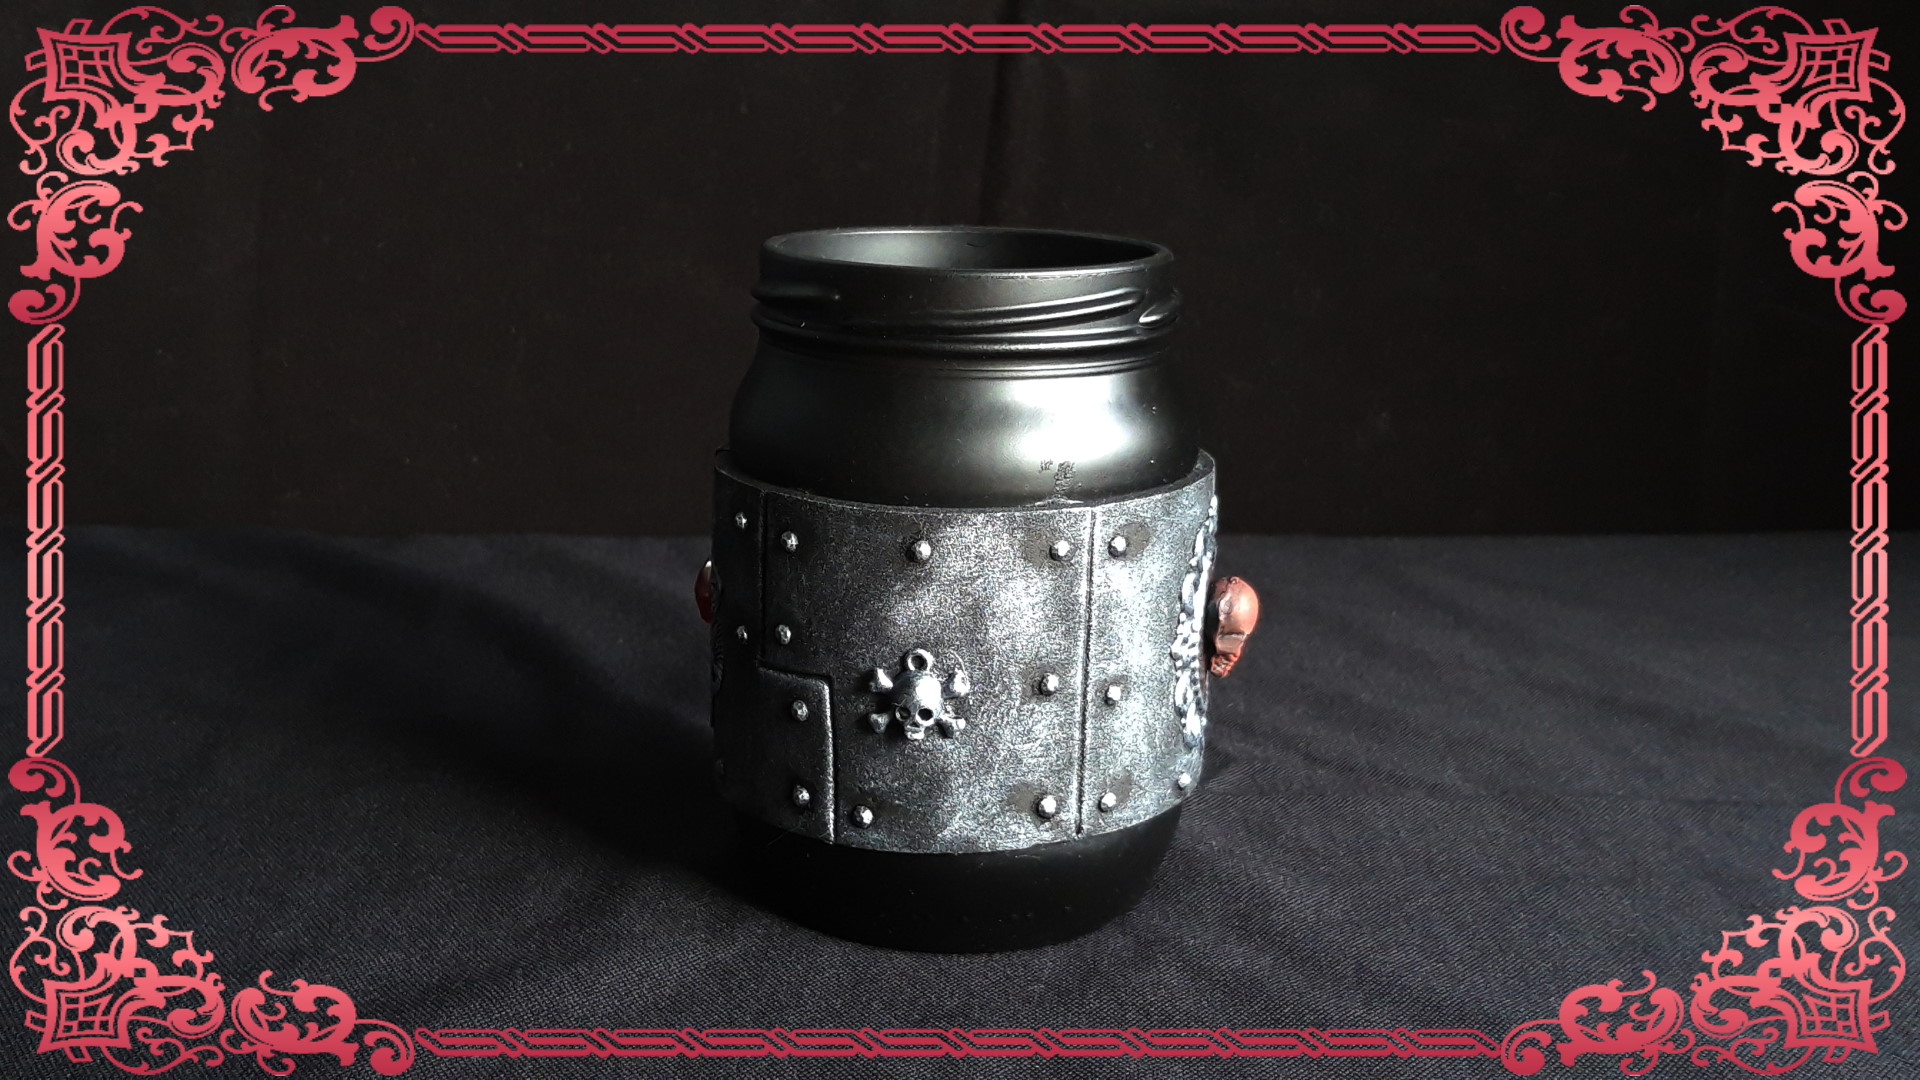 Steampunk Goth Jar